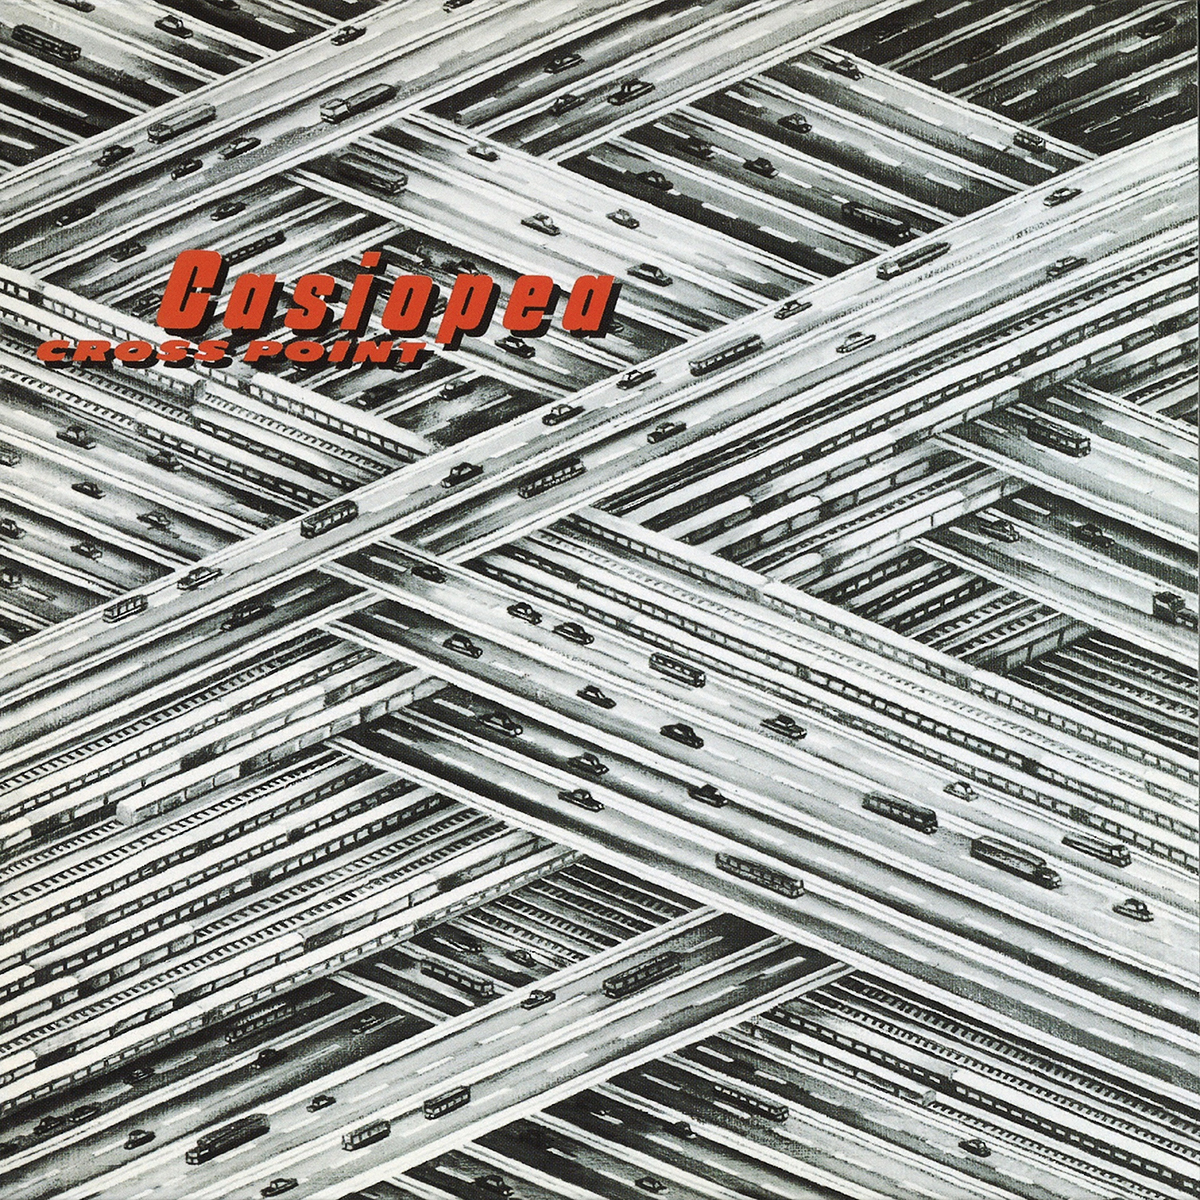 casiopea album 1979 flac